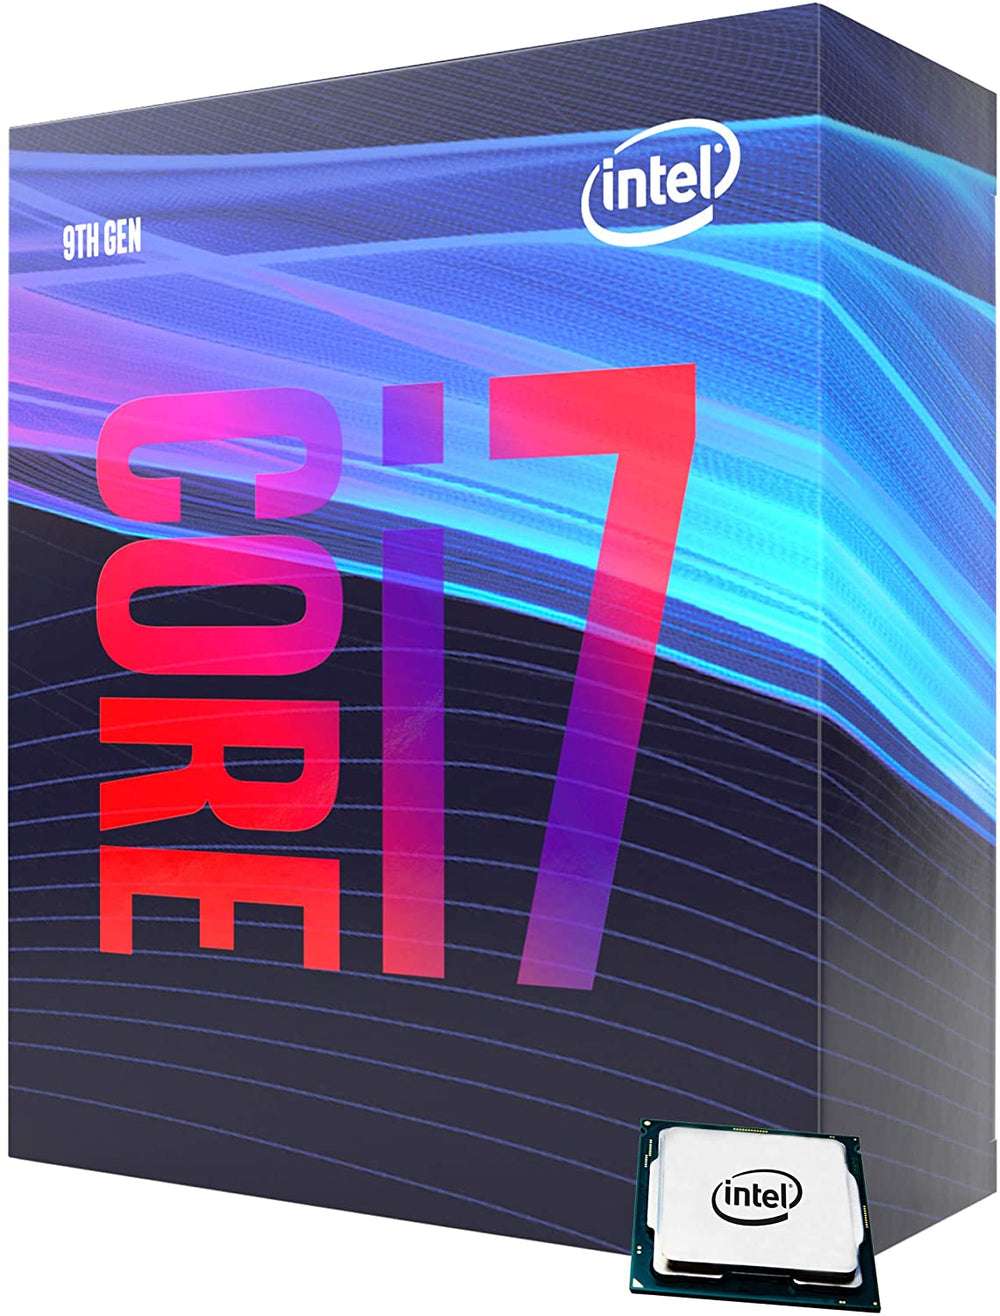 Intel® Core™ i7-9700 Desktop Processor 8-Core 8-Thread up to 4.7 GHz LGA 1151 300 Series (BX80684I79700)